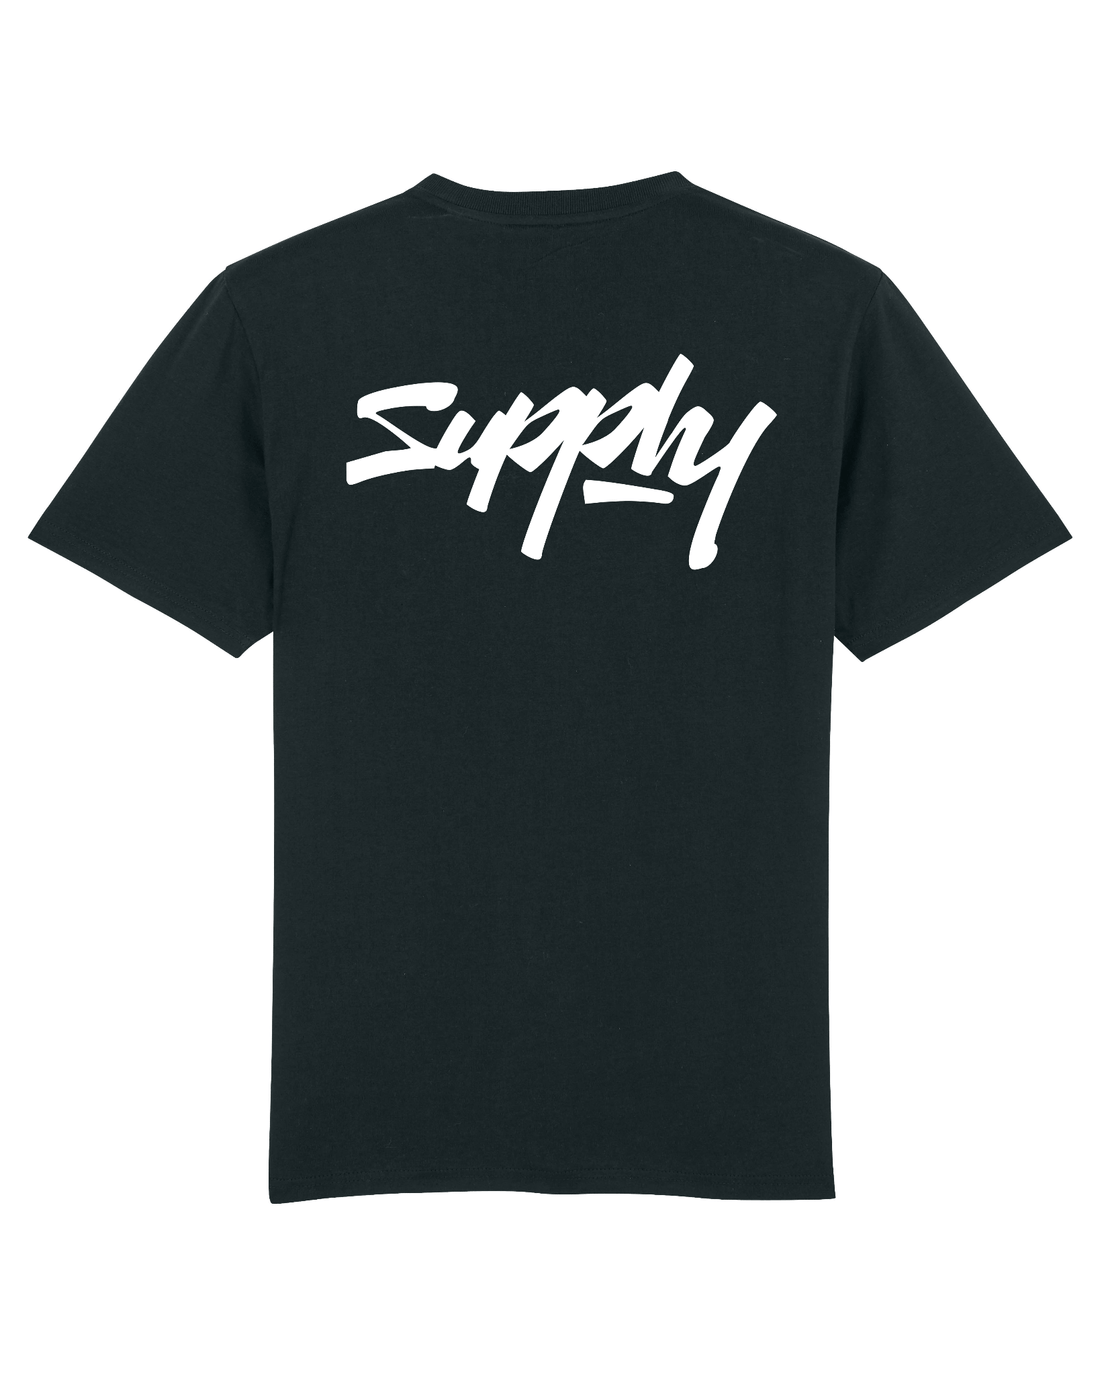 Black Skater T-Shirt, Supply V2 Back Print